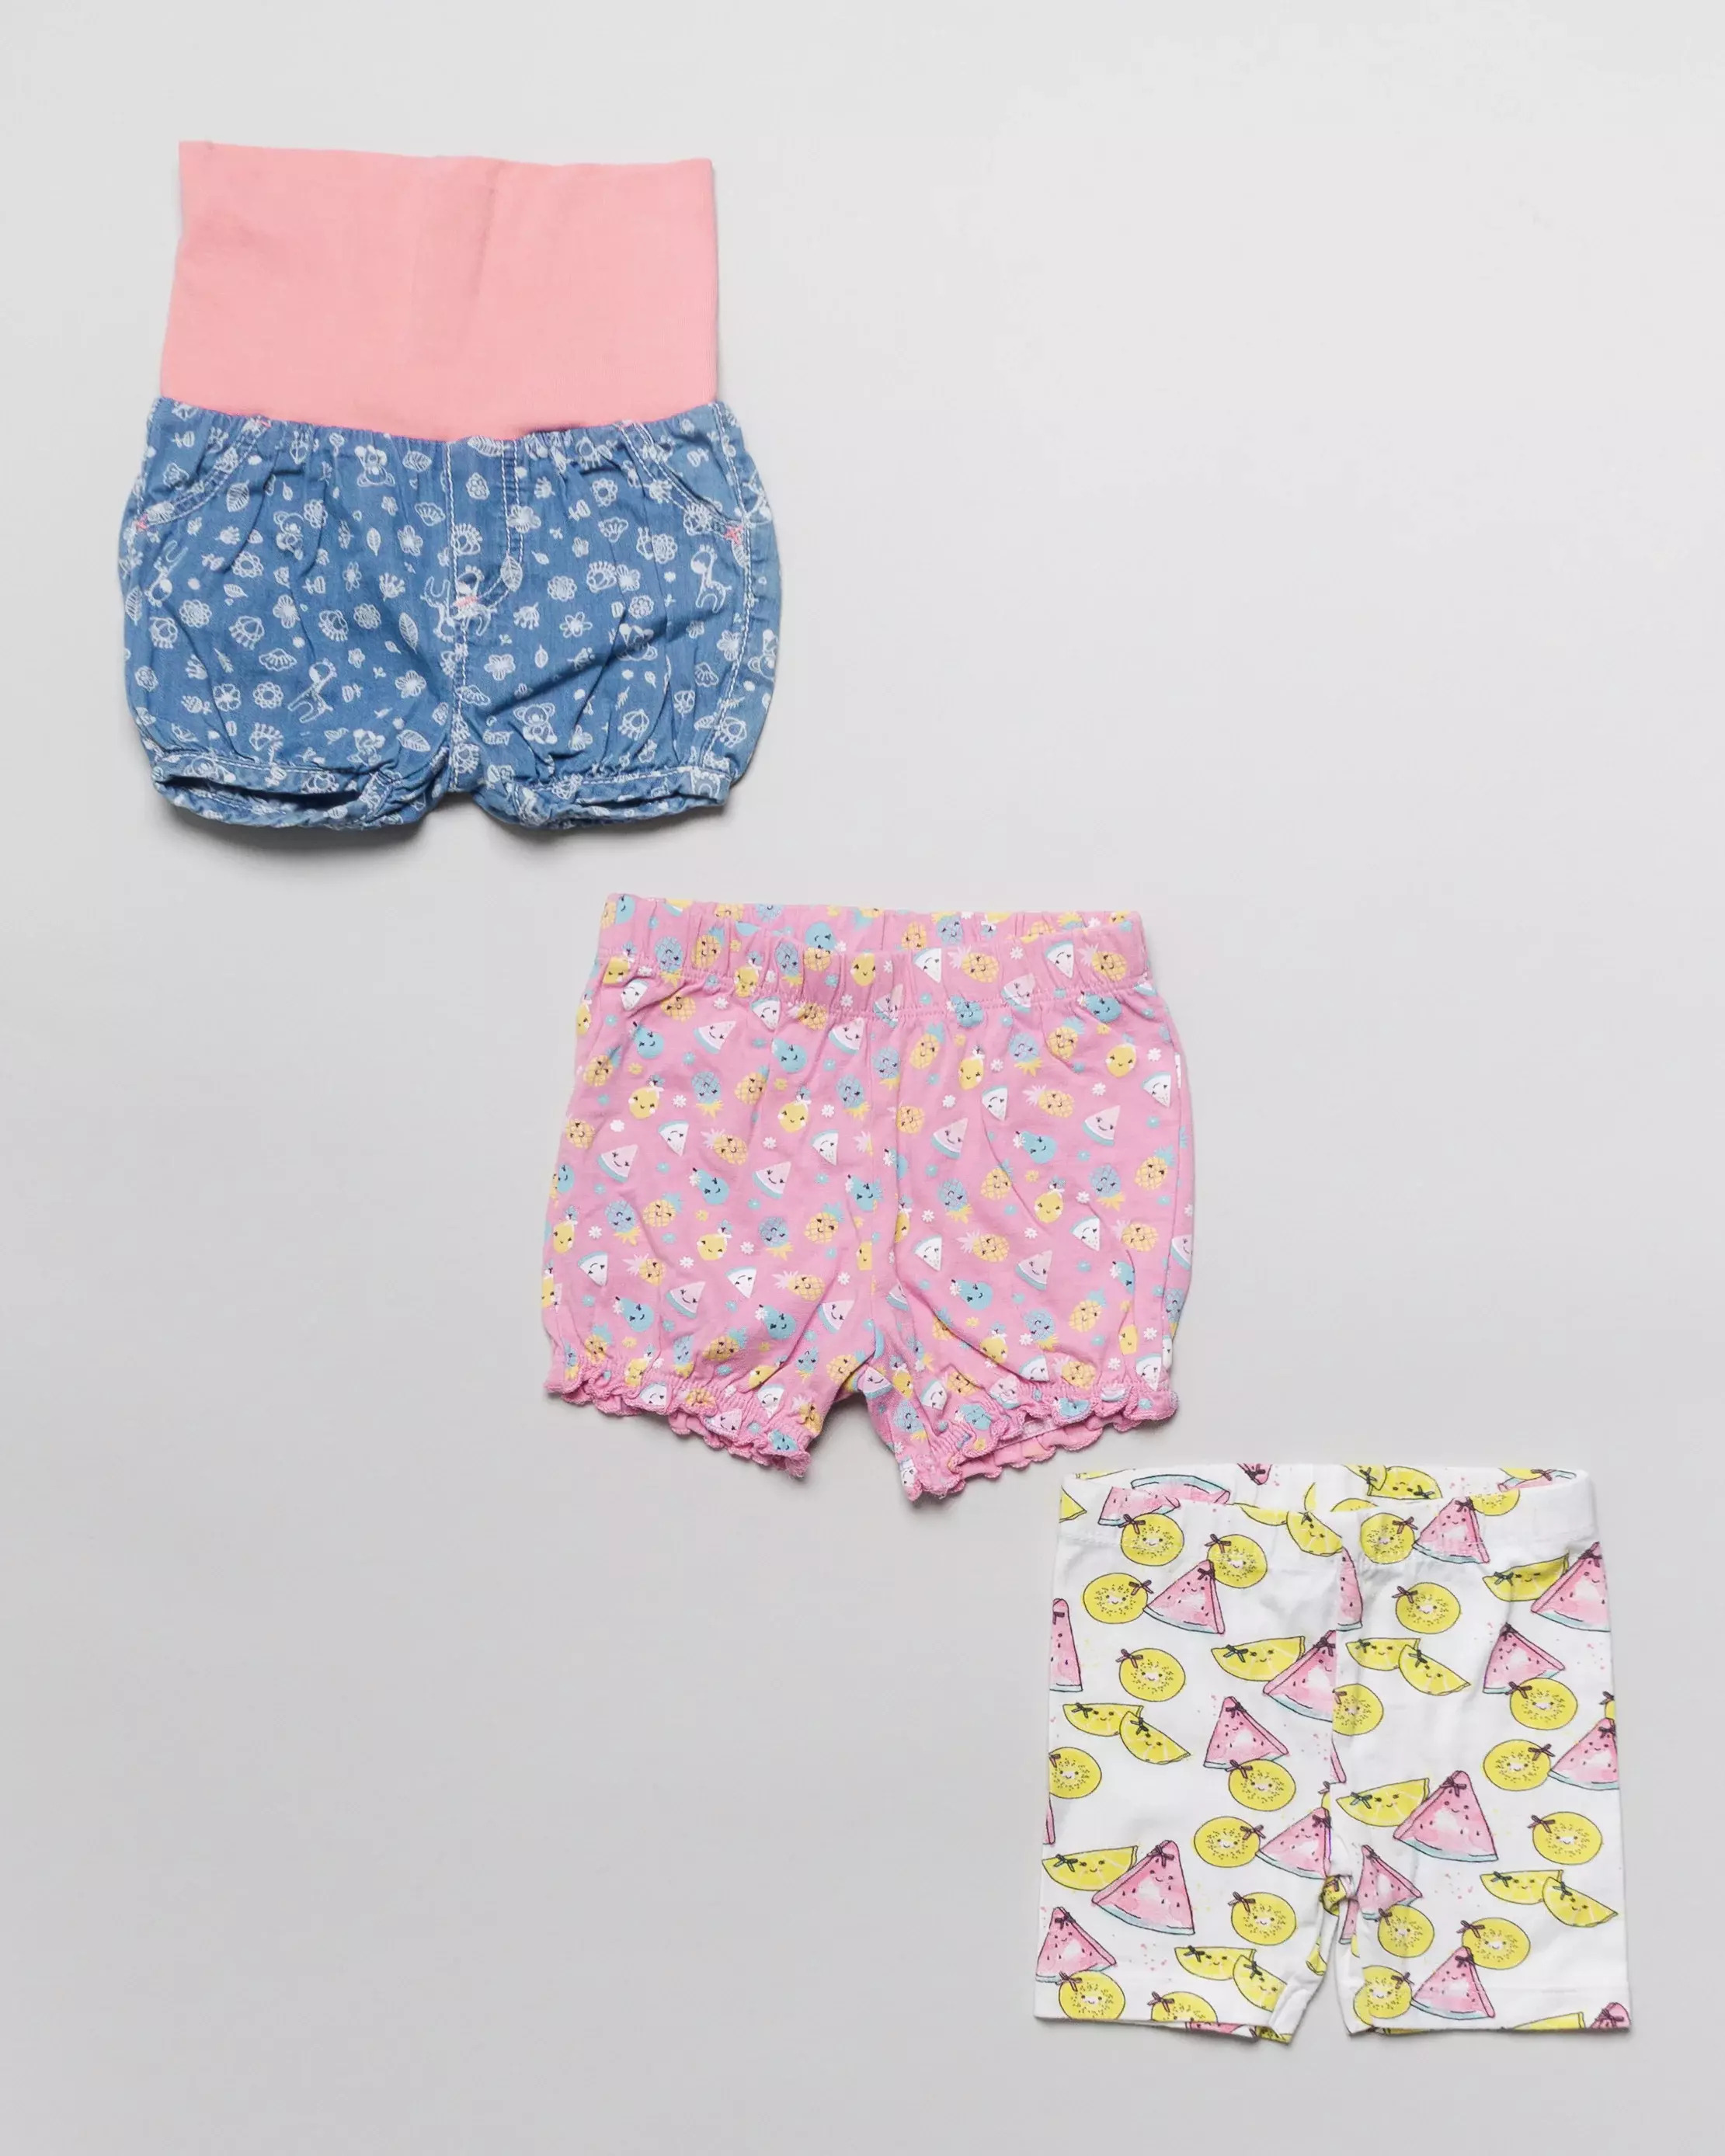 3 Shorts Gr. 62 – Kurze Hosen, Blumen, Wassermelone, Ananas, bunt, pink, Set, Pack